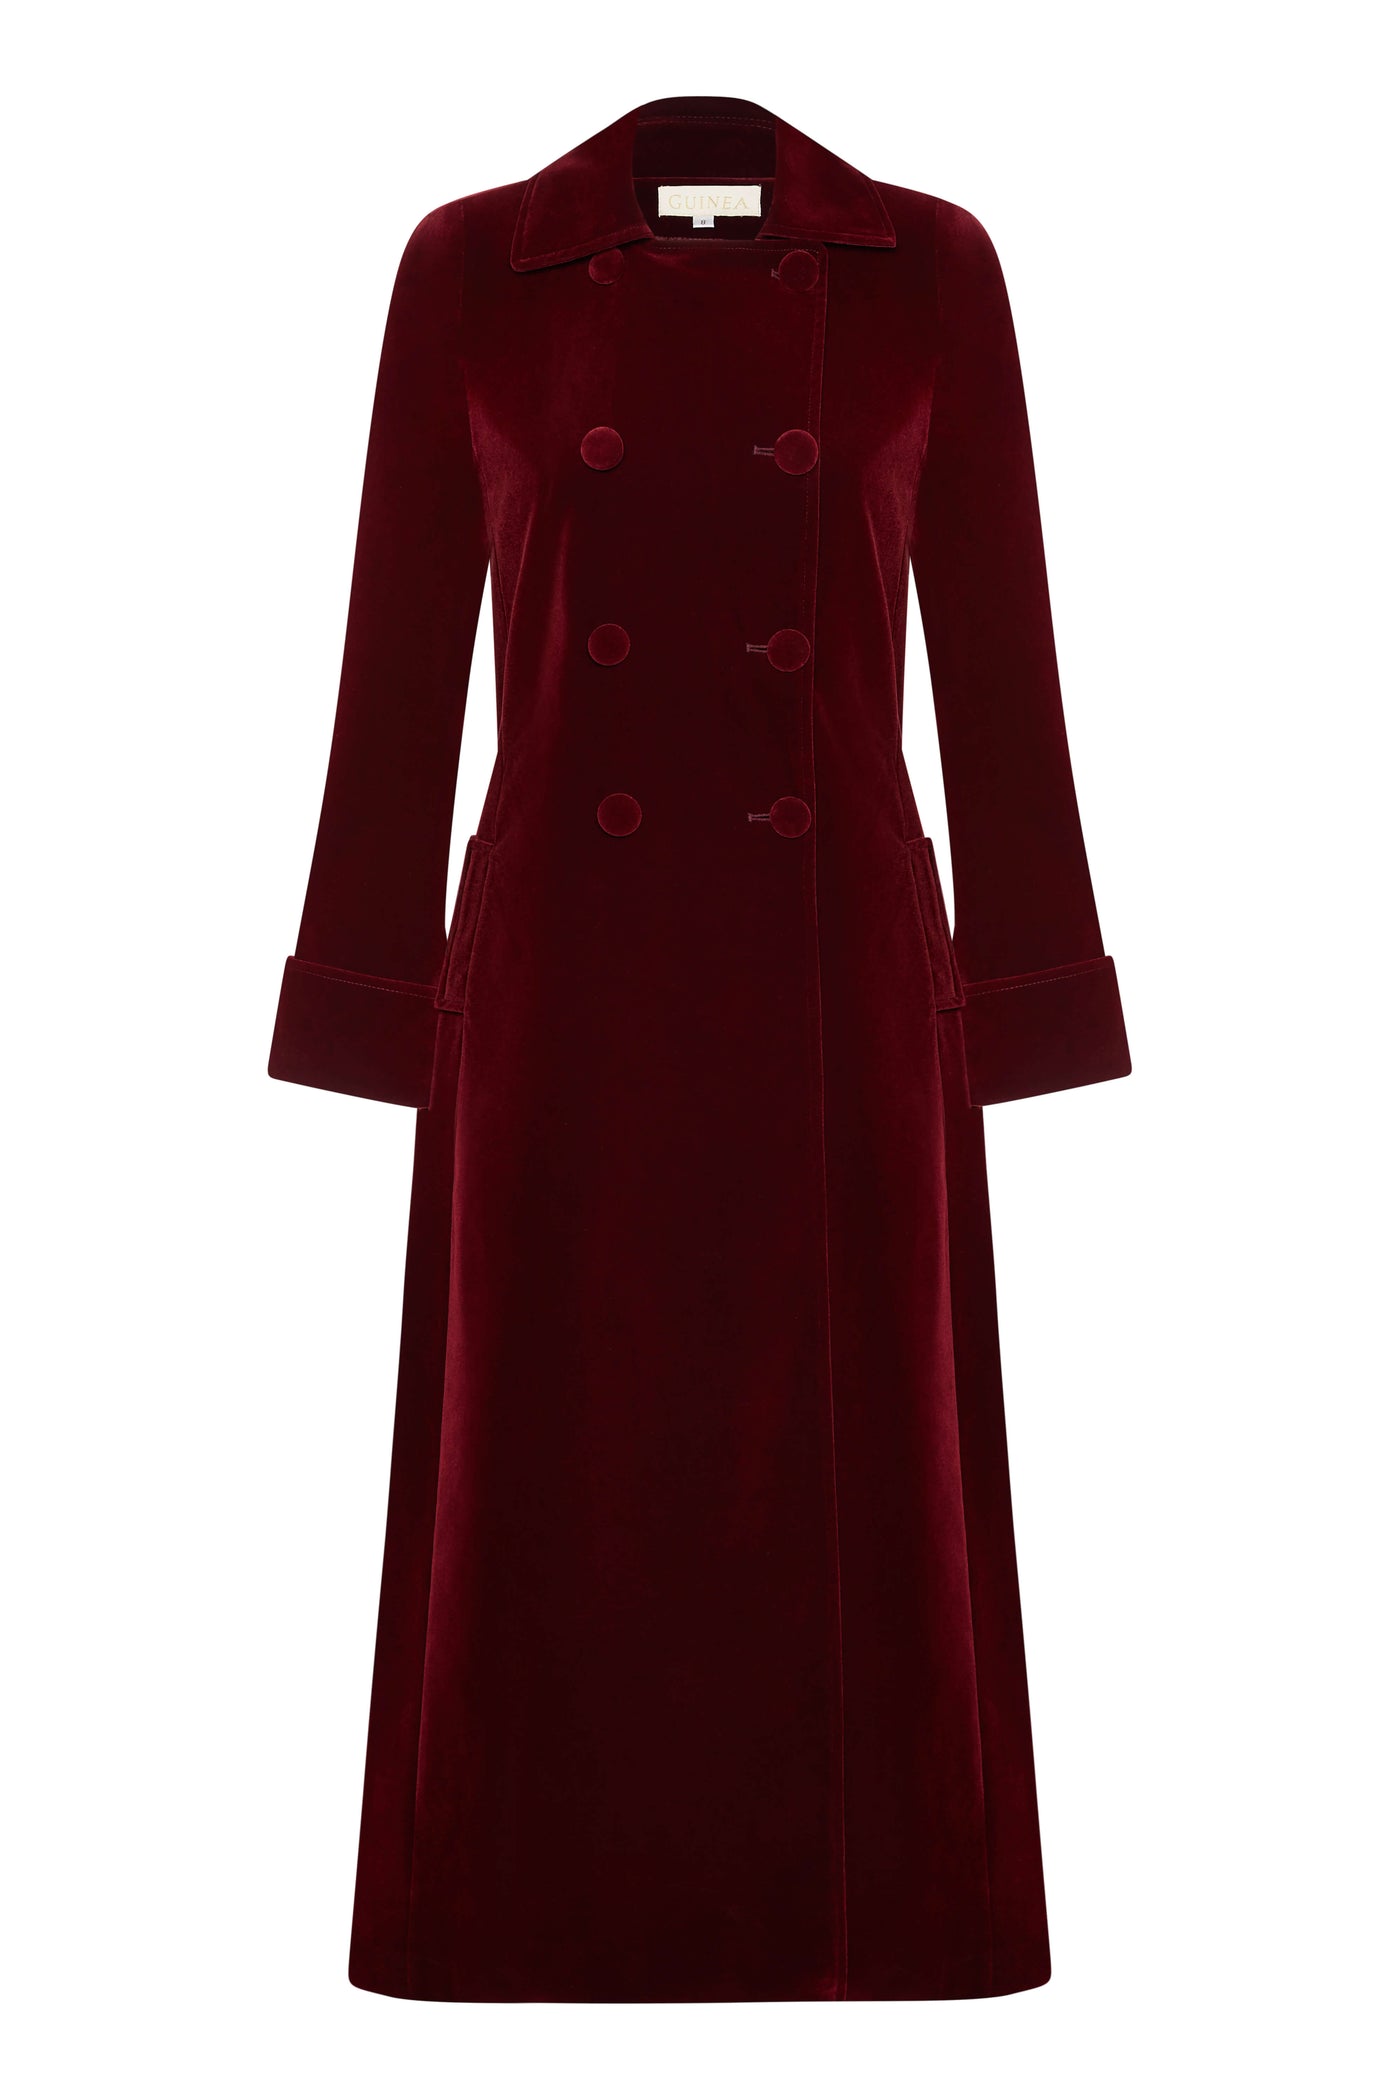 Delphi Long Red Velvet Coat - Boho Glamour - 50% OFF